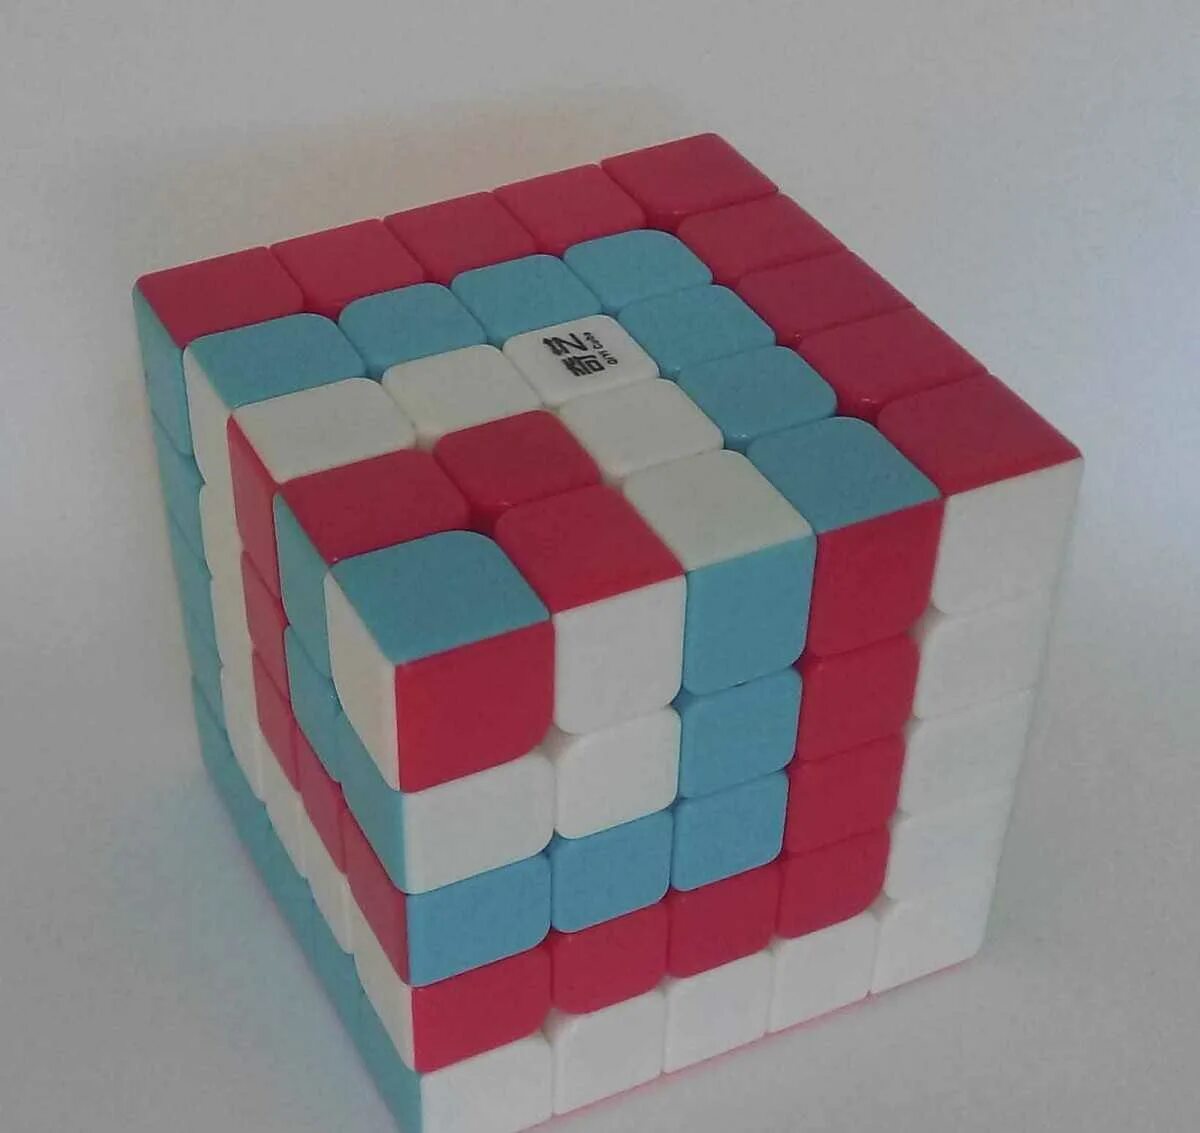 Кубик кубик раз два три. Узоры на кубике Рубика 3х3 куб в Кубе. Кубик в Кубе в Кубе 3х3. Узоры на кубике Рубика 5х5 кубик в Кубе. Куб в Кубе кубик Рубика 5х5.